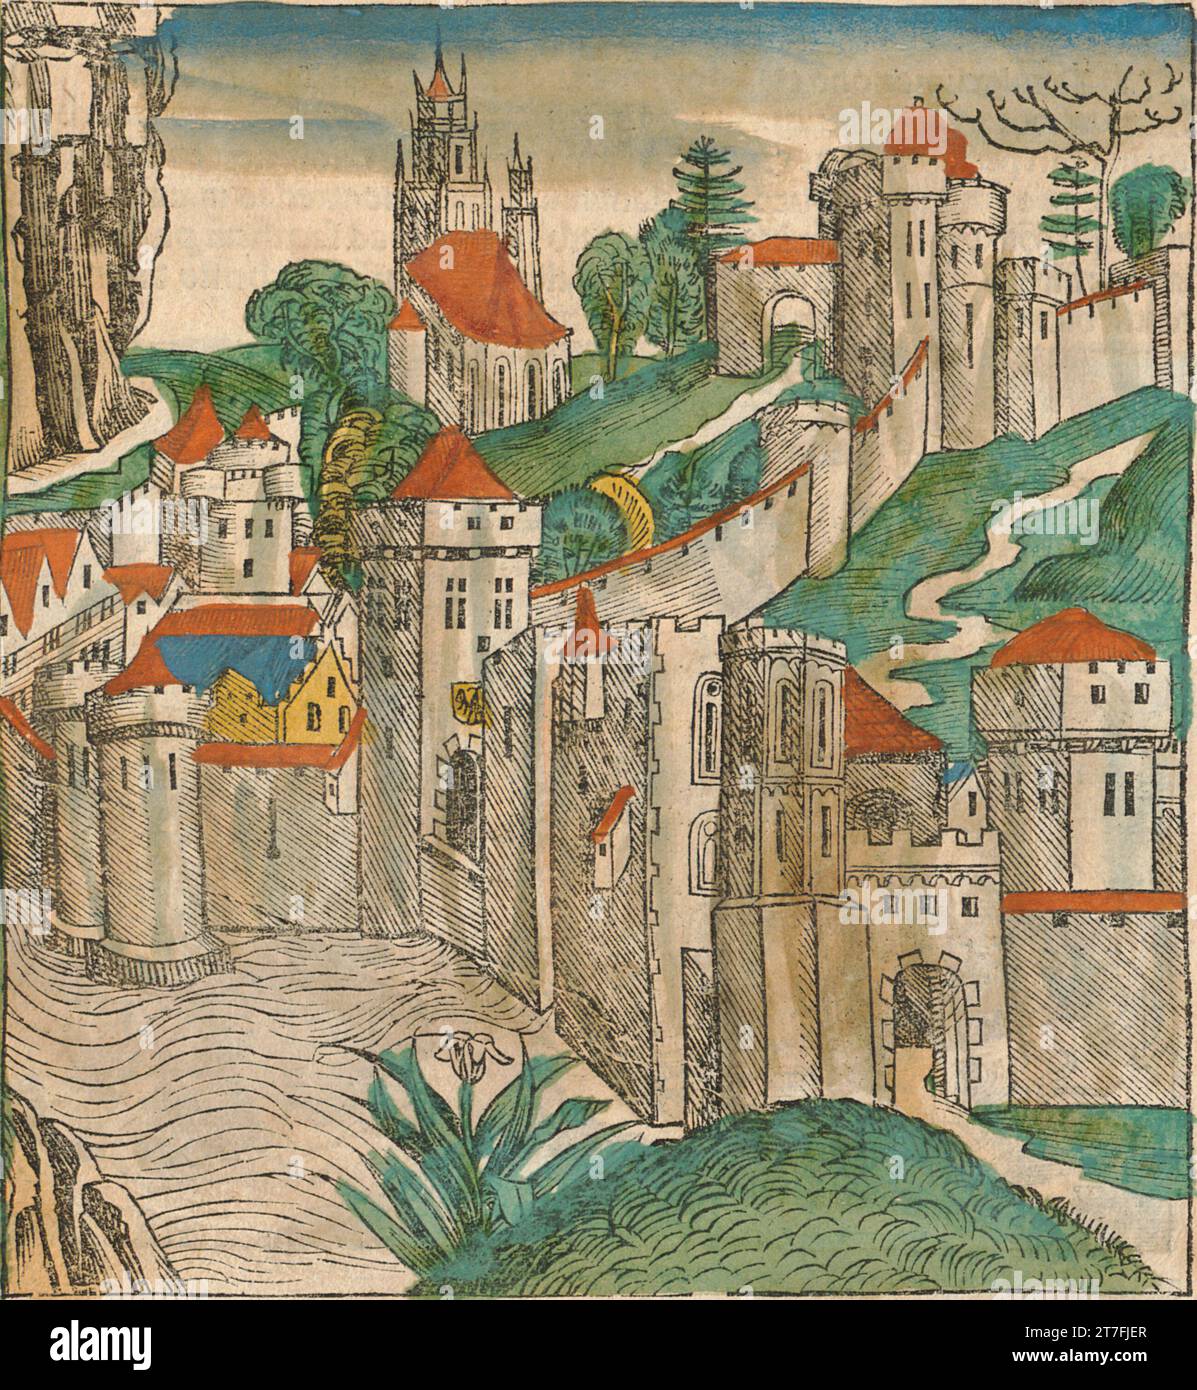 Représentation de Memphis, Empire byzantin - Illustration de la chronique de Nuremberg, 1493. Illustré par Wilhelm Pleydenwurff et Michael Wolgemut Banque D'Images